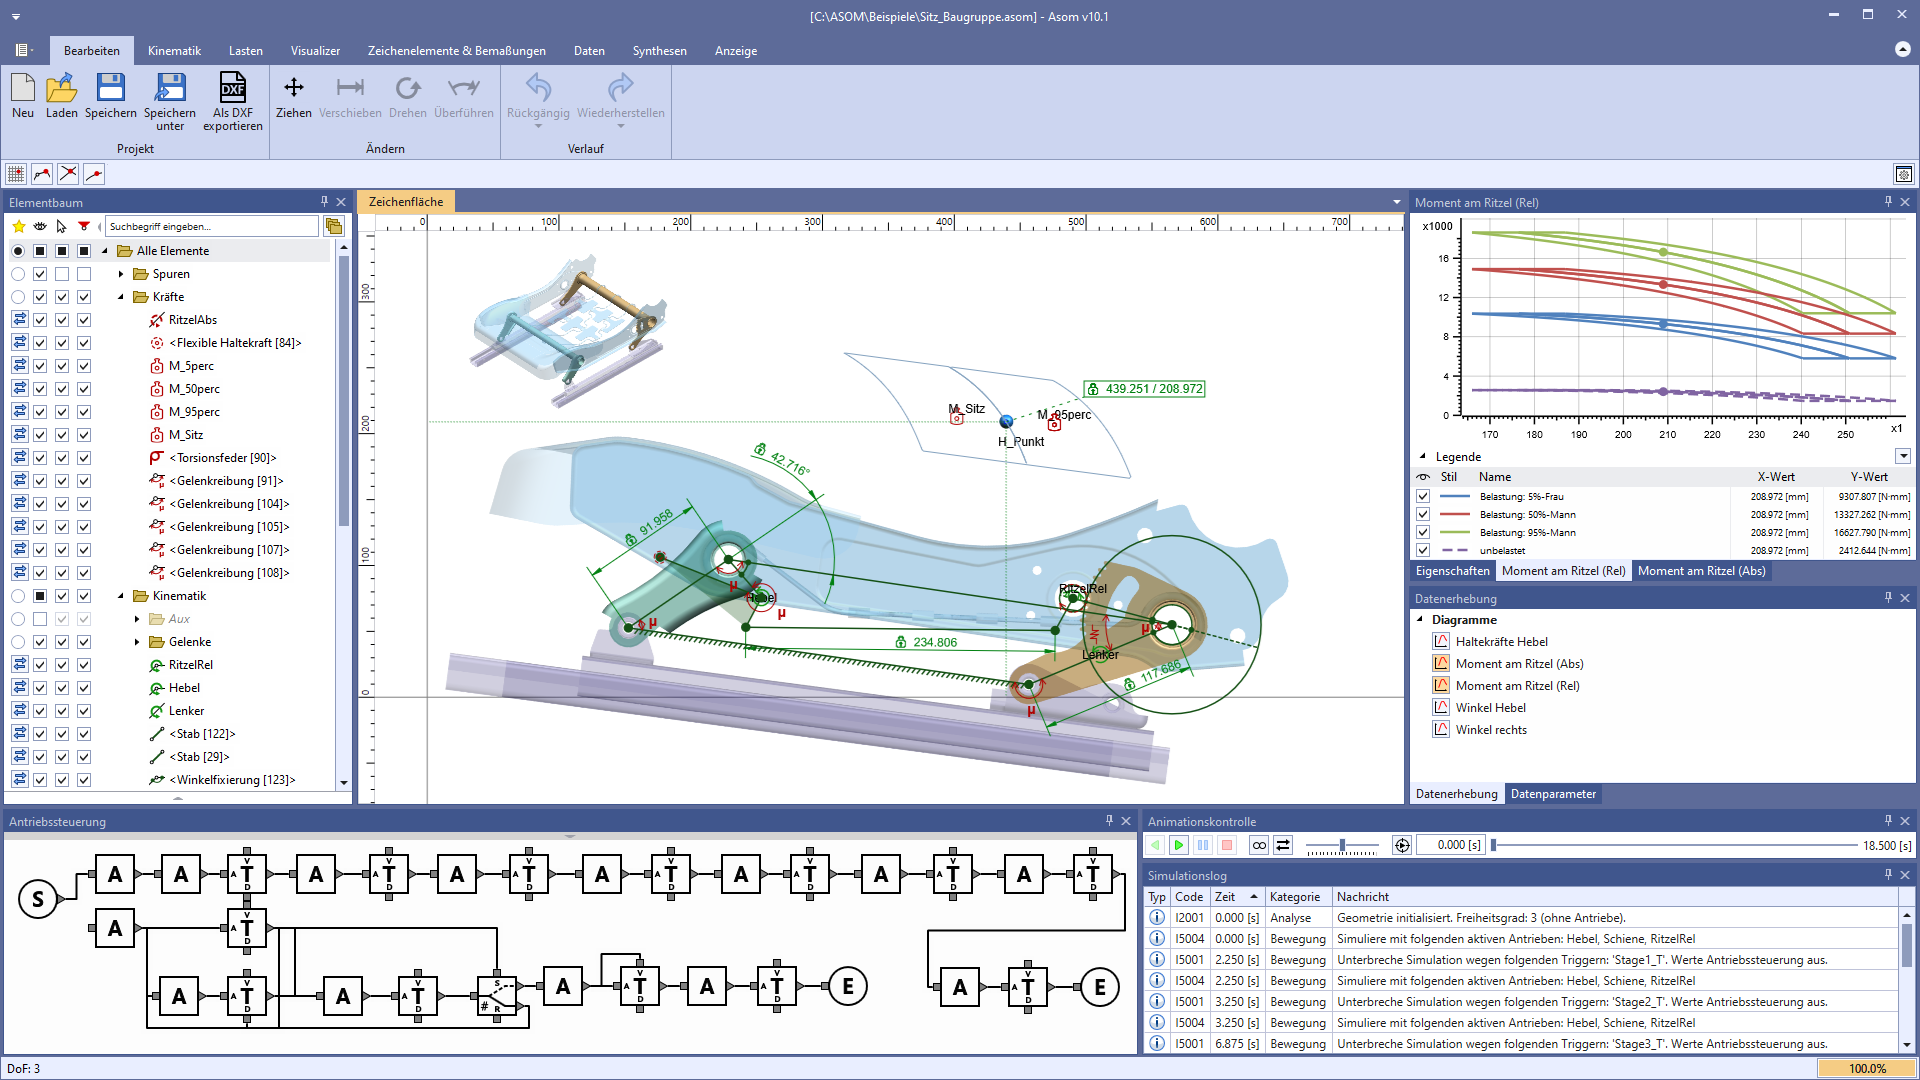 Screenshot aus der ASOM Kinematik-Software, auf dem die Benutzeroberfläche von der ASOM v10 Kinematik-Software und ein Beispielprojekt zu sehen sind.